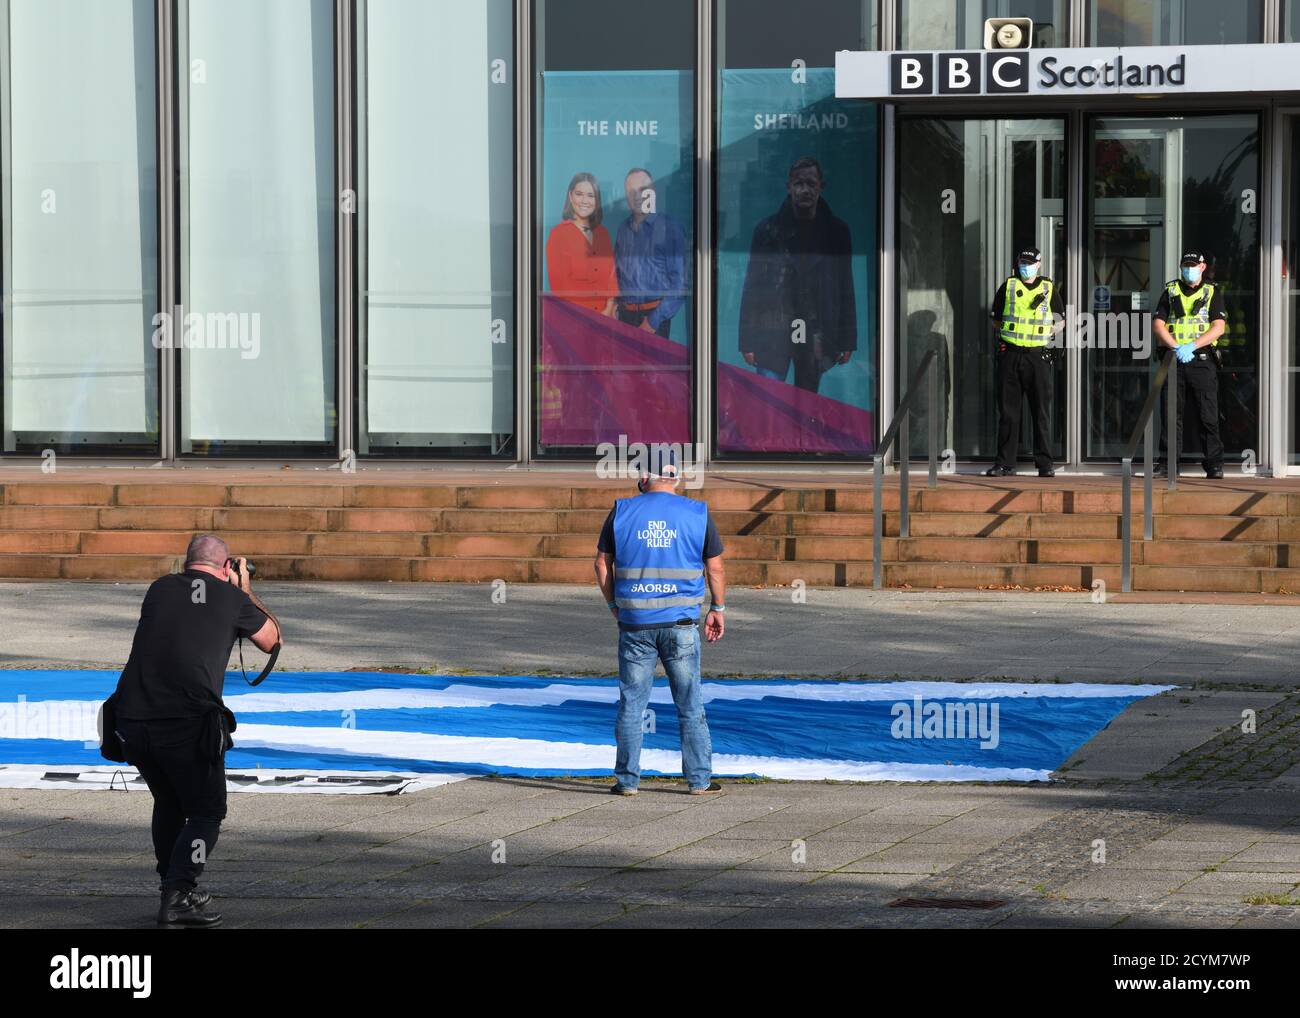 Un seul manifestant suite à une distanciation sociale démontre qu'il n'y a pas de reportages injustes à l'entrée protégée par la police de BBC Scotland à Glasgow. Banque D'Images